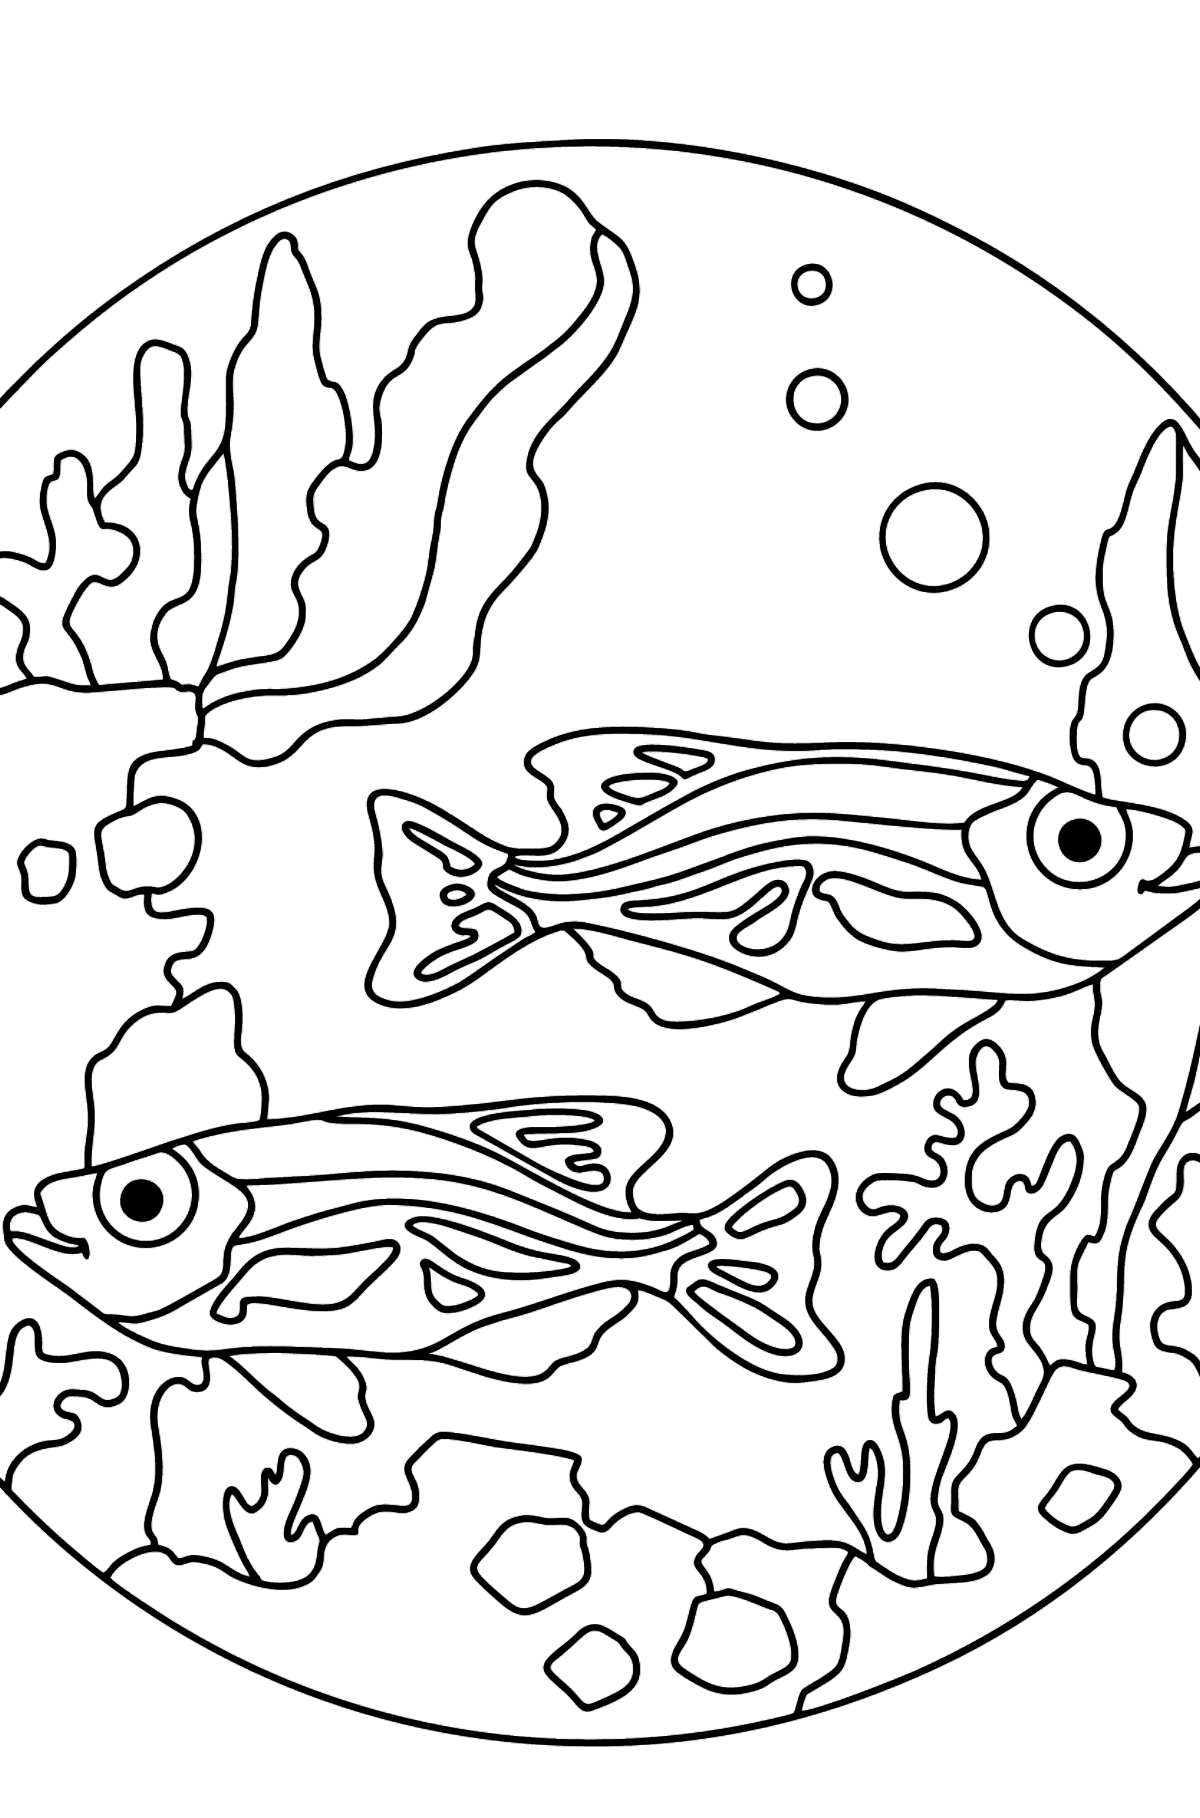 Desenho de Aquário de peixes para colorir - Imagens para Colorir para Crianças